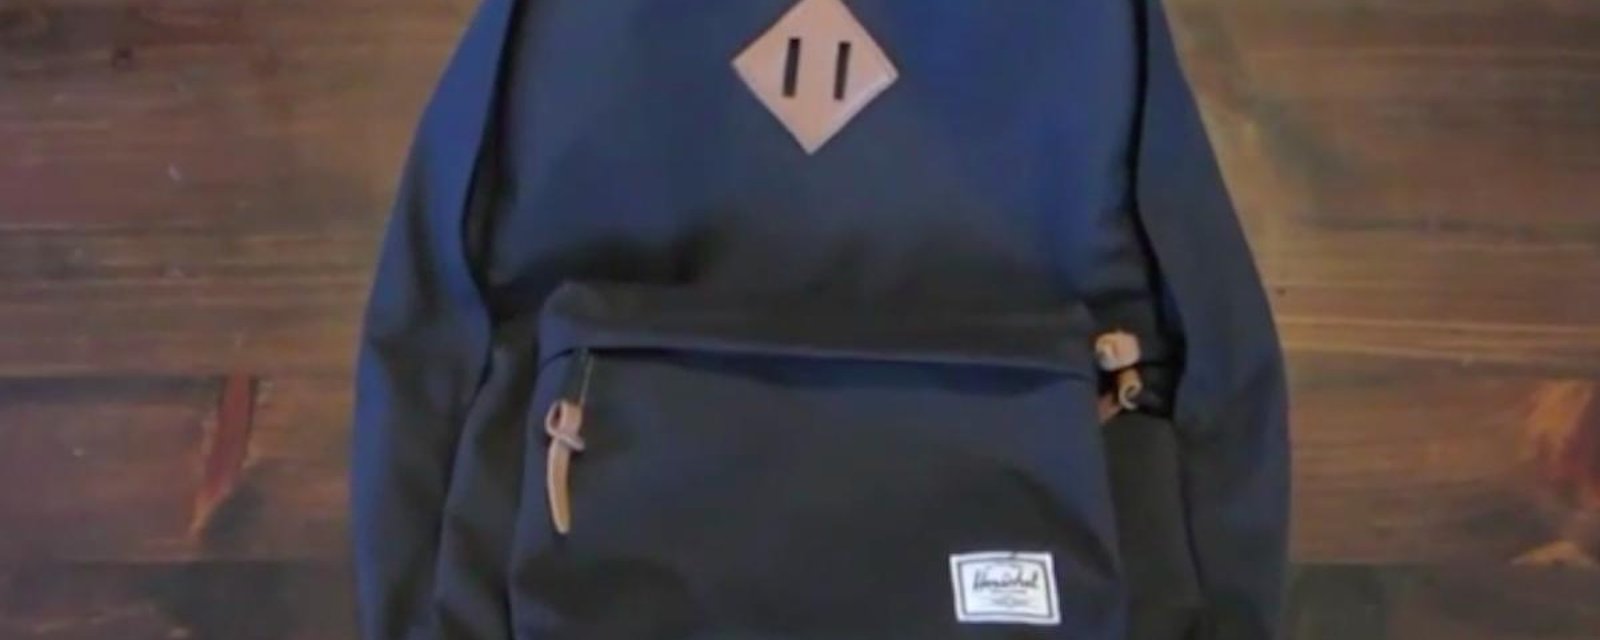 À quoi sert le patch percé de deux trous qui se trouve sur les sacs à dos?